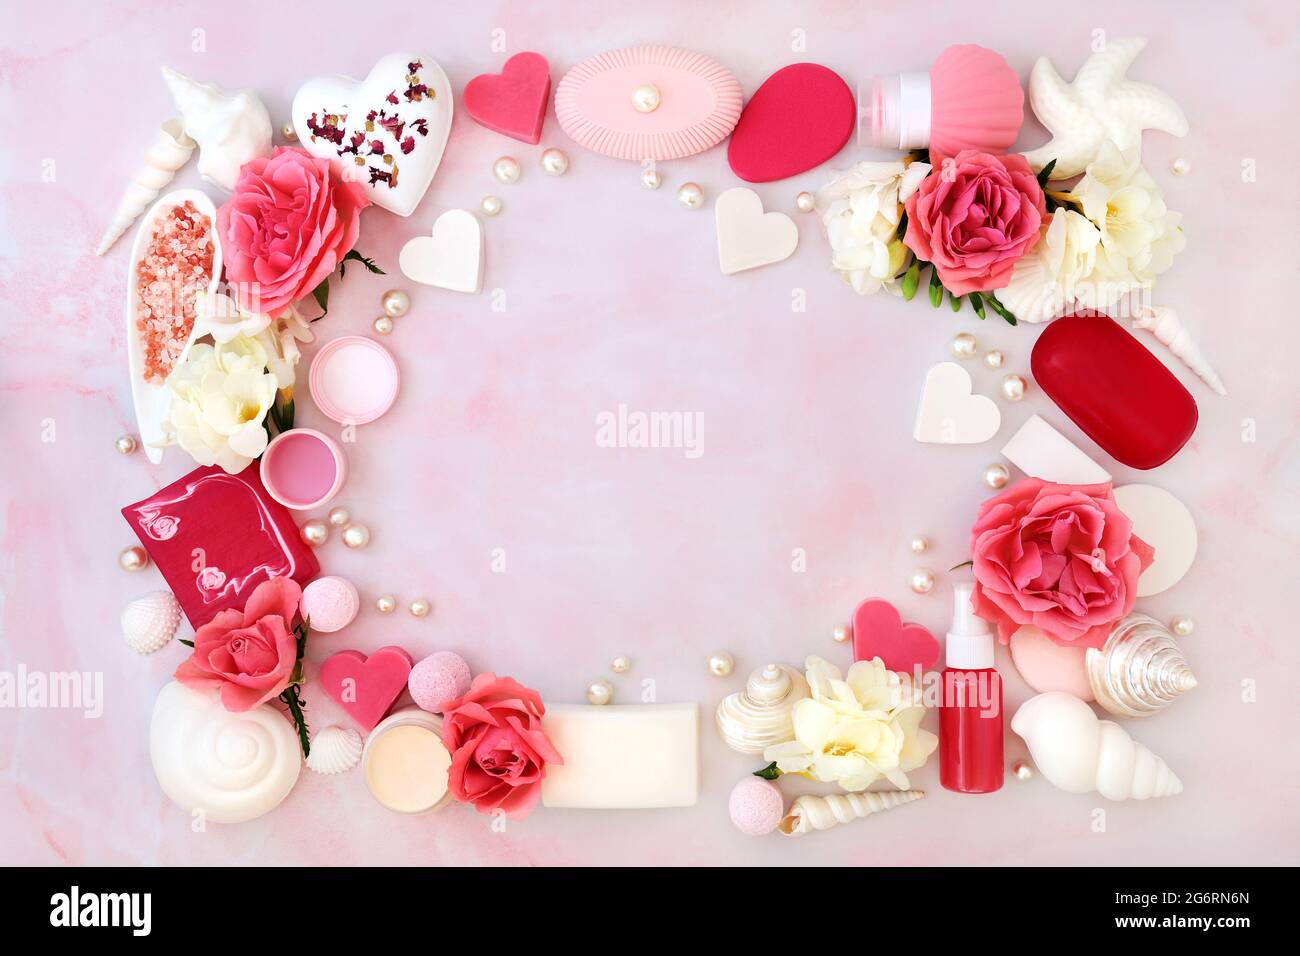 Beauty-Spa-Behandlungsprodukte für Haut- und Körperpflege mit Rosen- und Freesiablüten, die einen abstrakten Hintergrund bilden. Flache Laie in meliertem Pink. Stockfoto